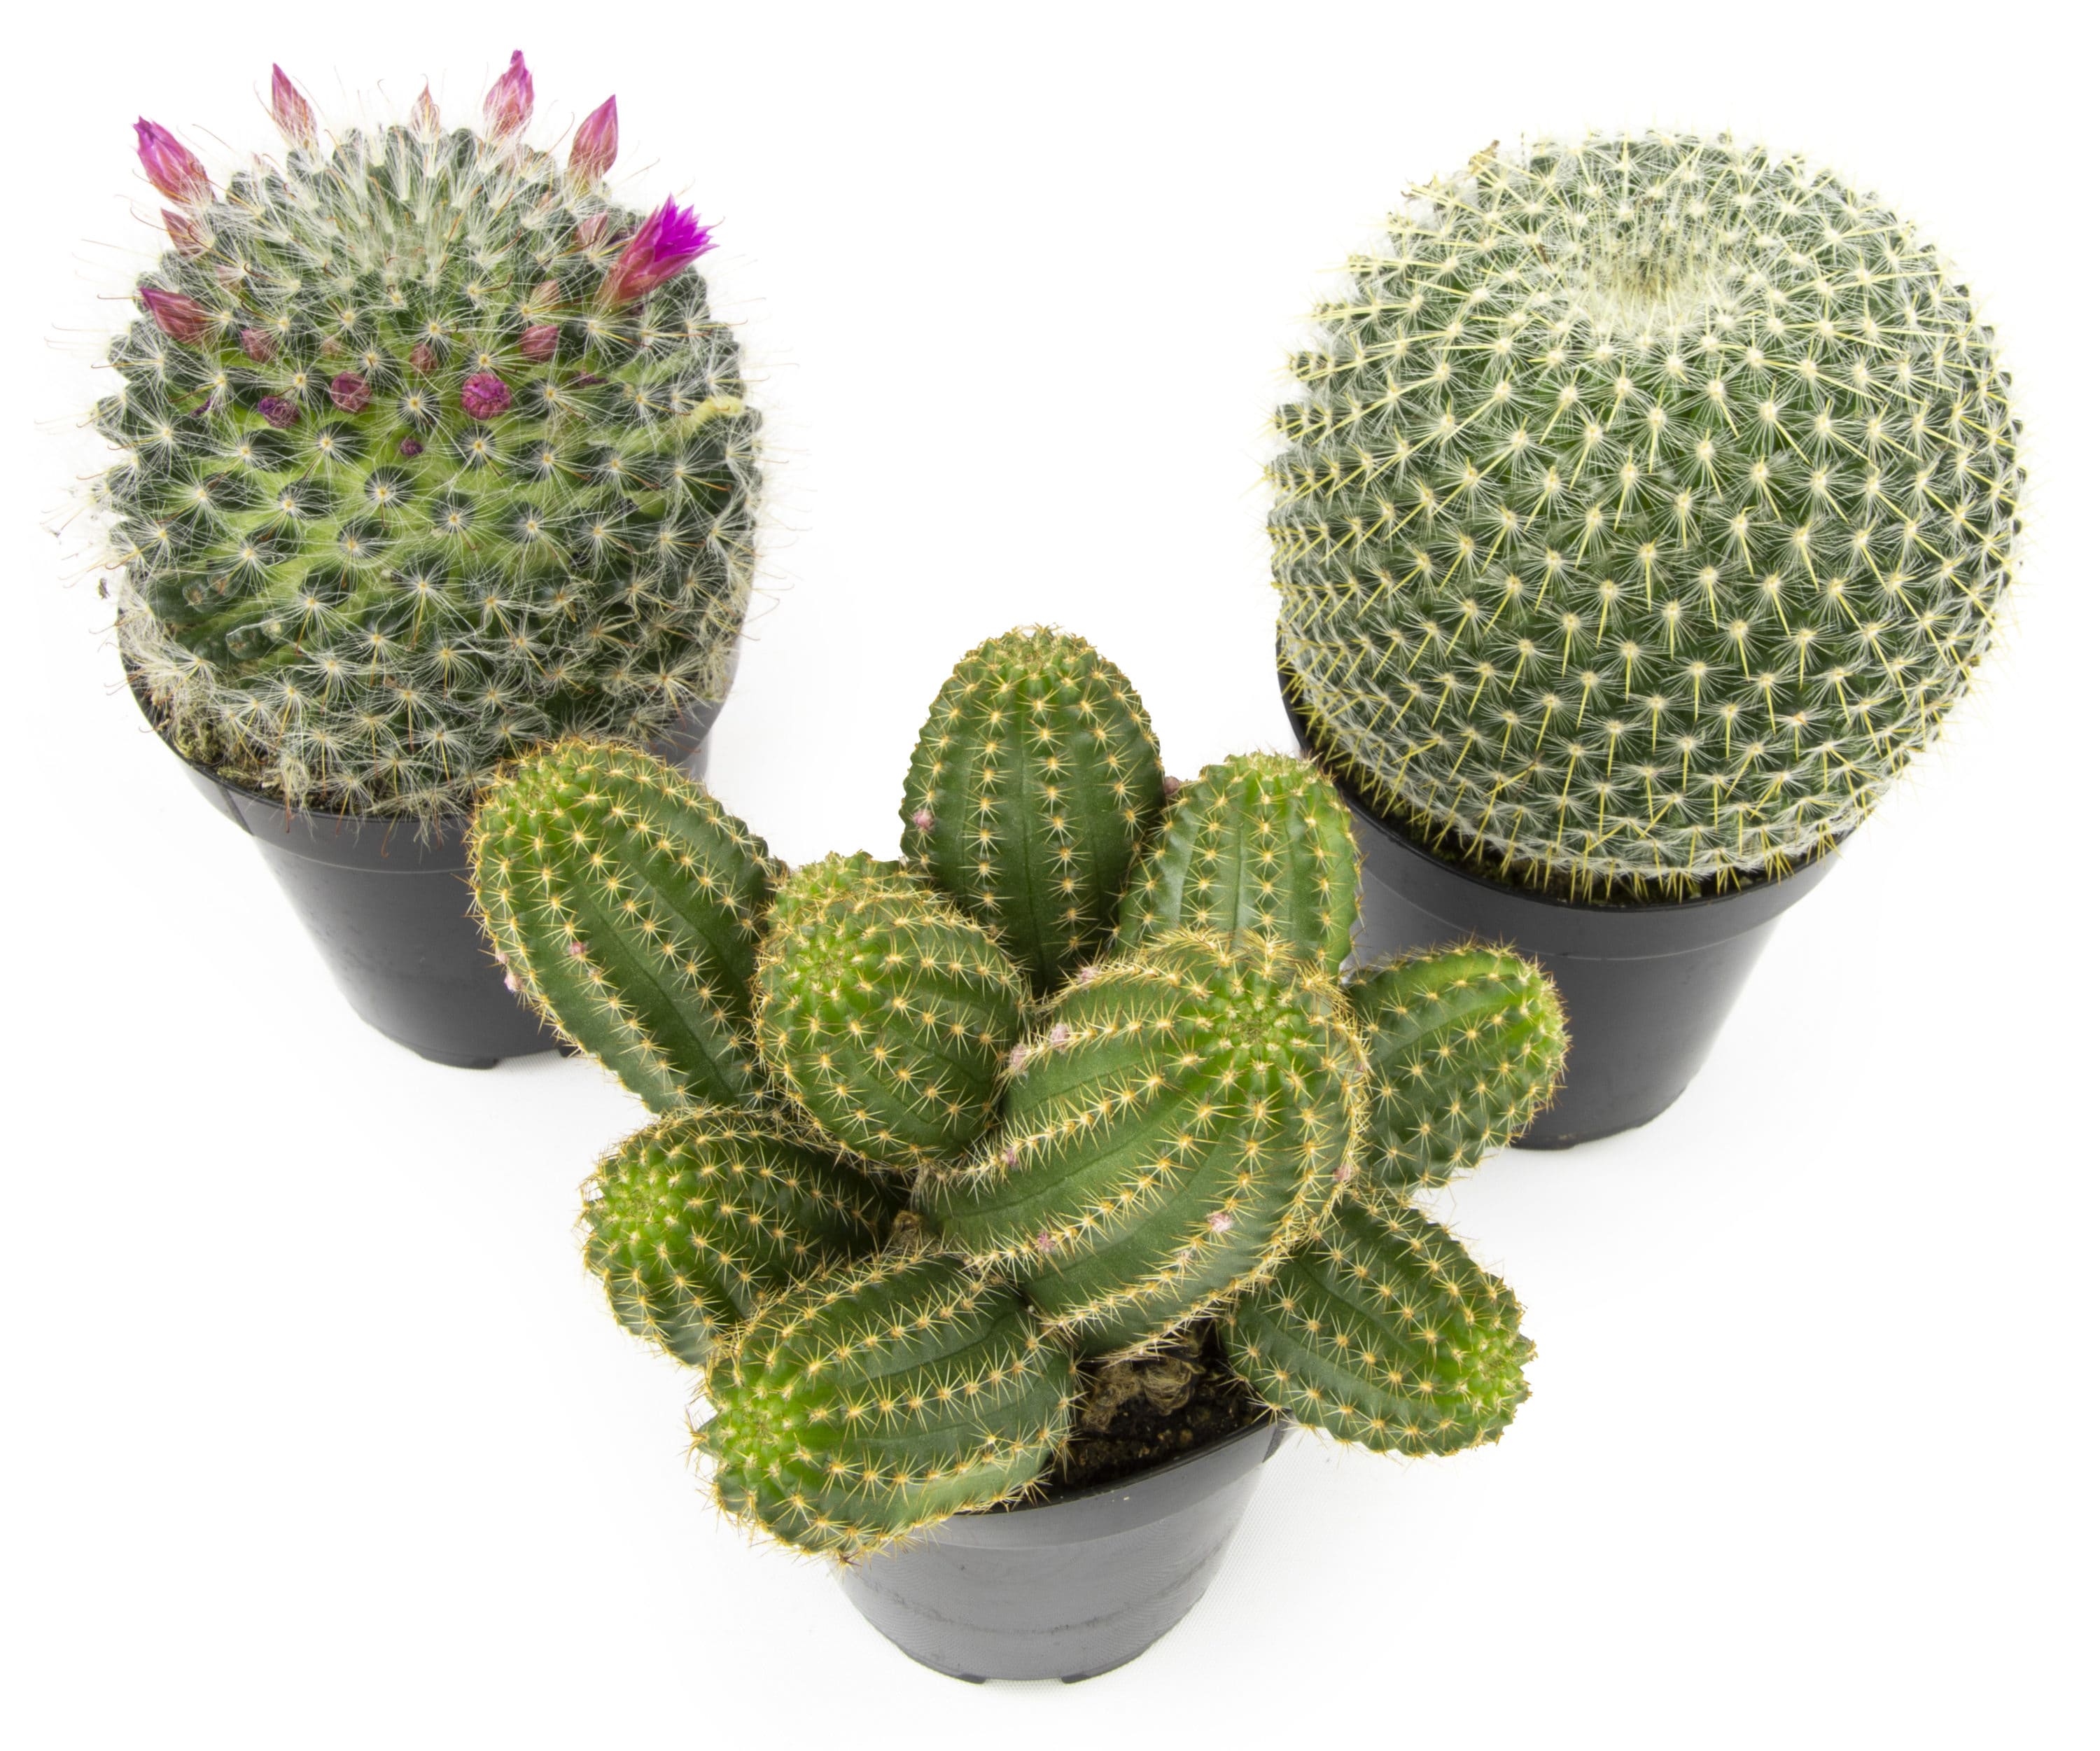 1 qt Bowl with Lid - Cactus